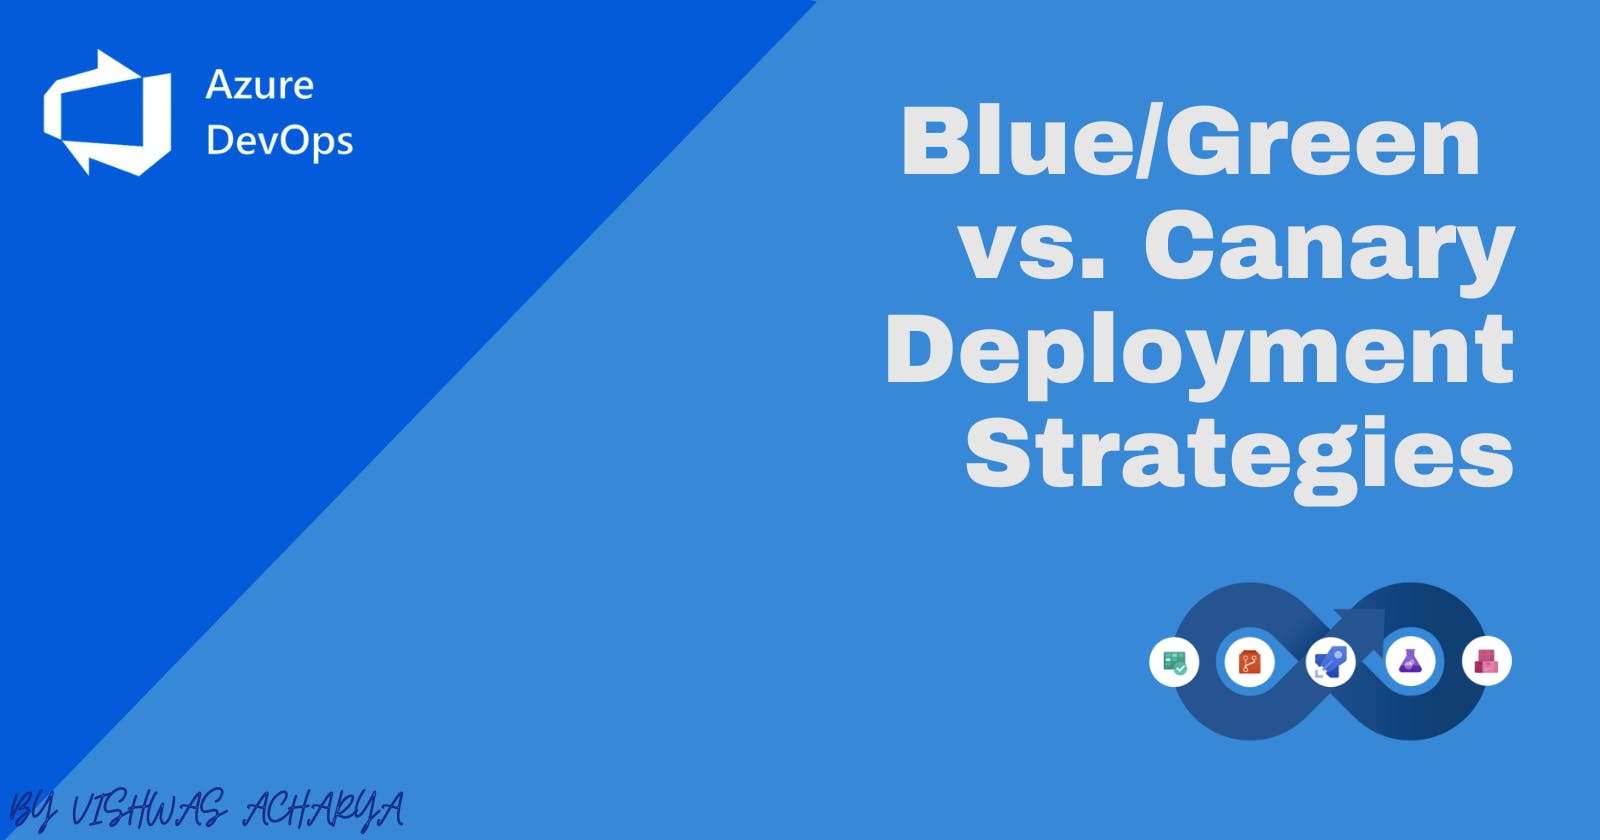 Azure DevOps Deployment Strategies: Blue/Green vs. Canary